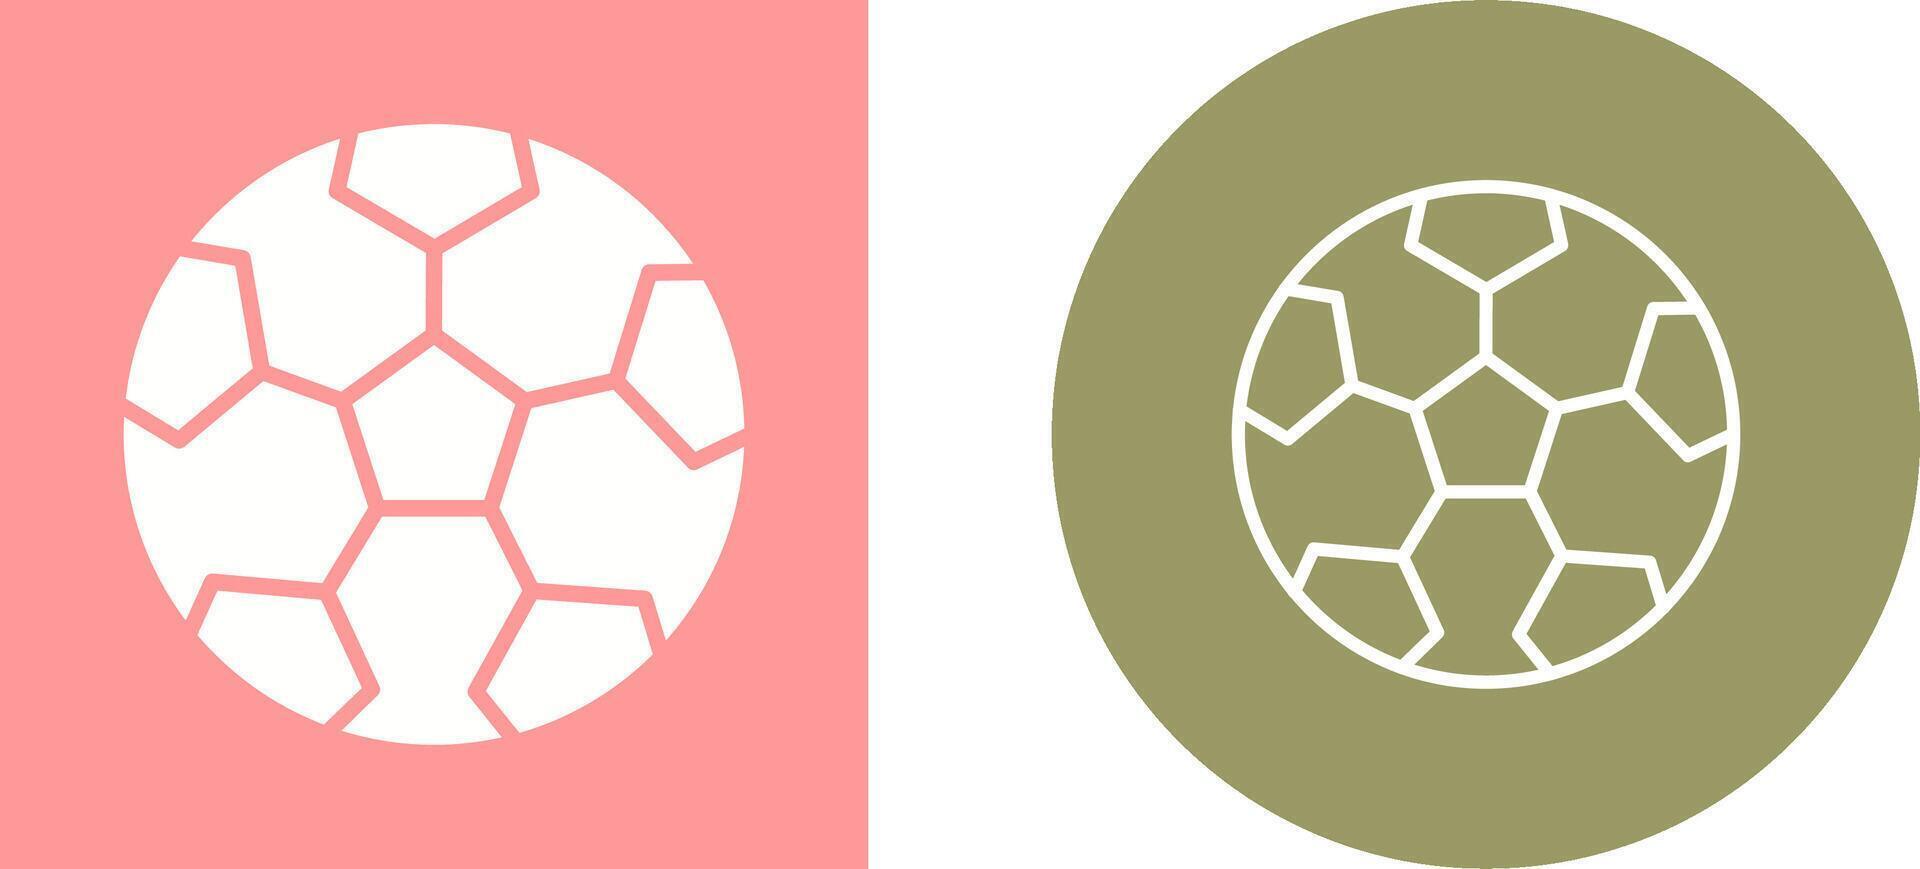 Soccer Vector Icon